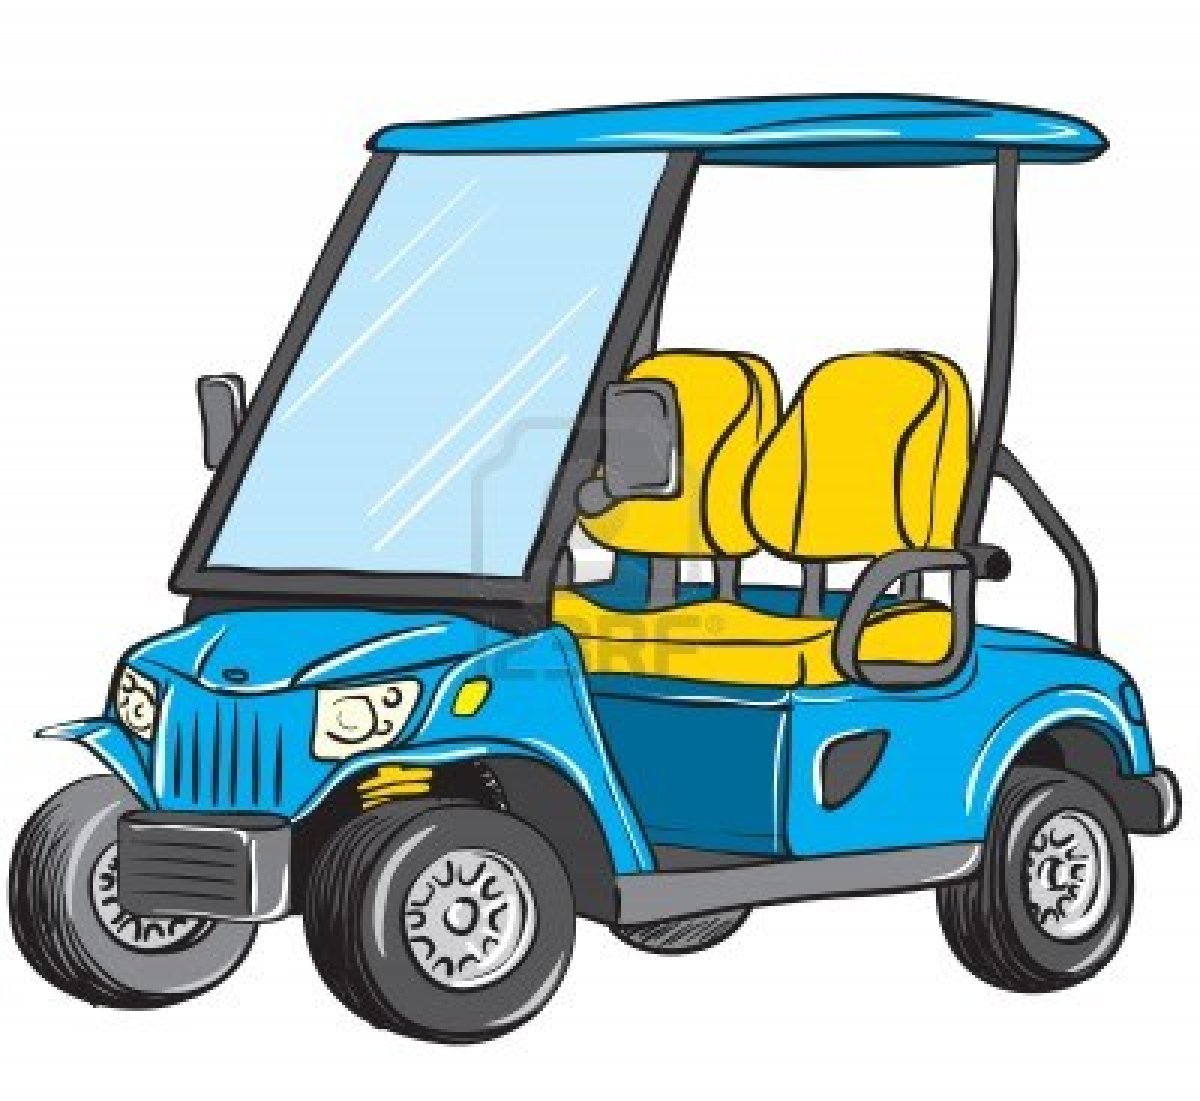 Cartoon Golf Cart Clipart #1